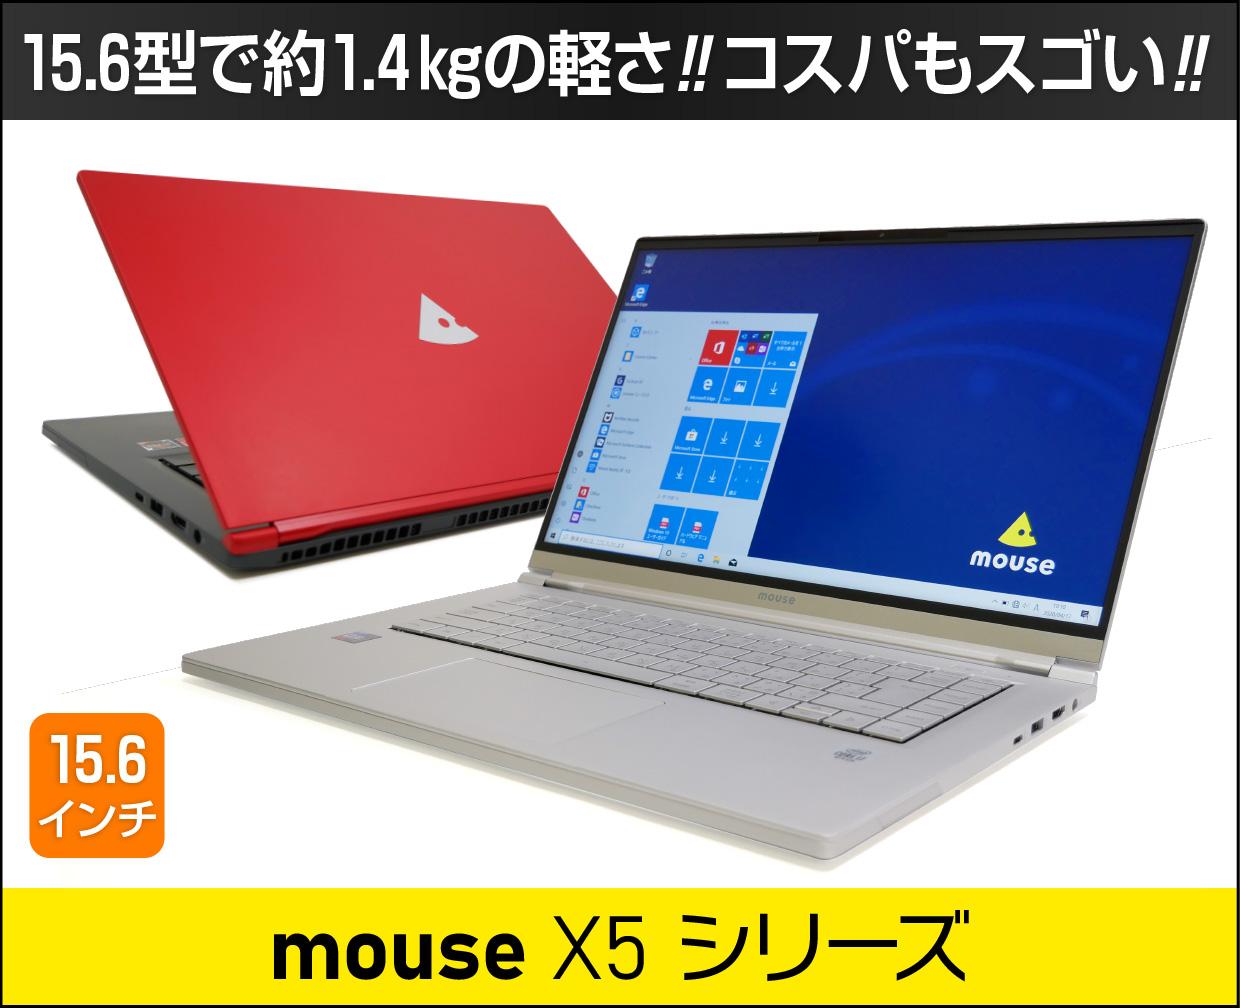 マウスコンピューター【mouse X5シリーズ2020年モデル】実機レビュー